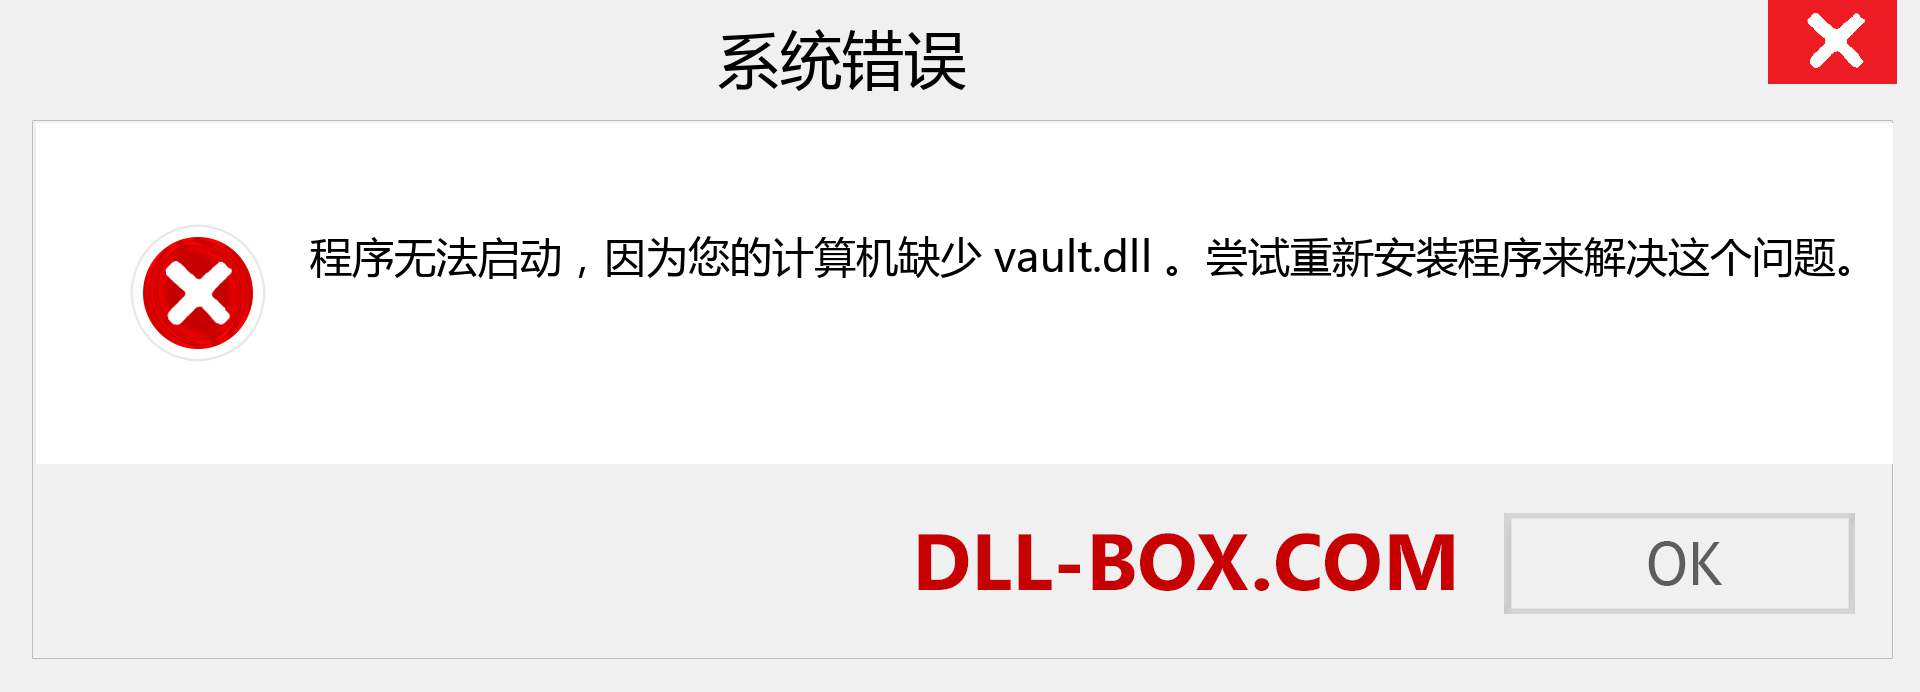 vault.dll 文件丢失？。 适用于 Windows 7、8、10 的下载 - 修复 Windows、照片、图像上的 vault dll 丢失错误